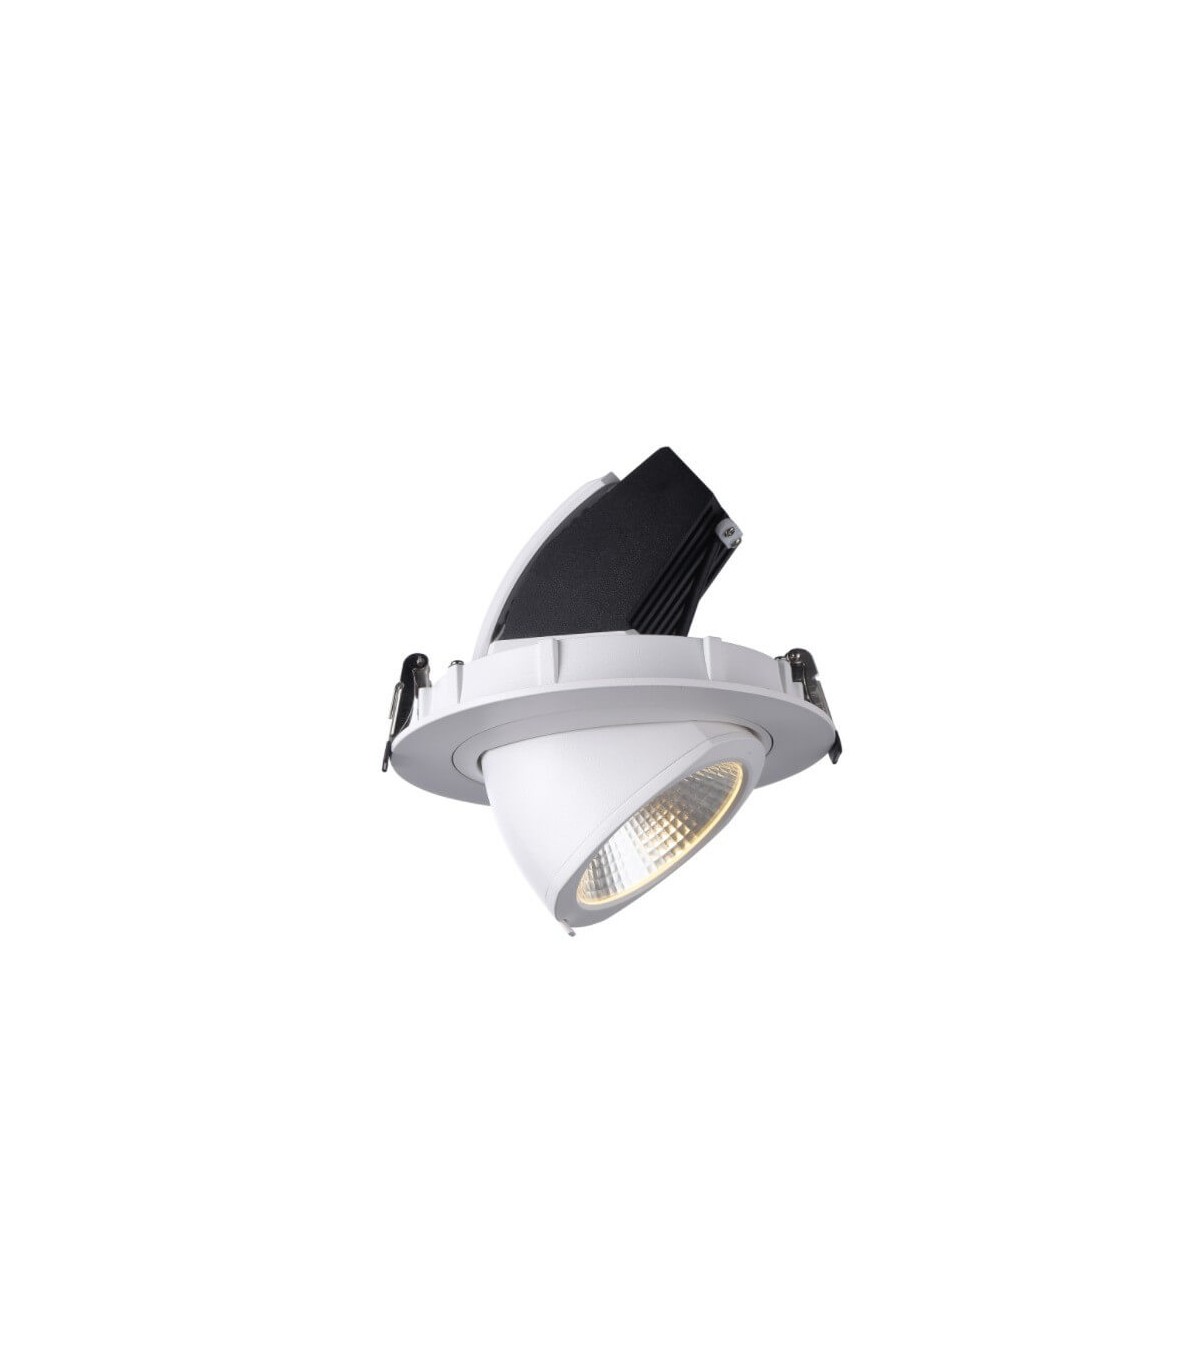 Lampadaire LED 16W dimmable lampadaire diffuseur réglable lumière